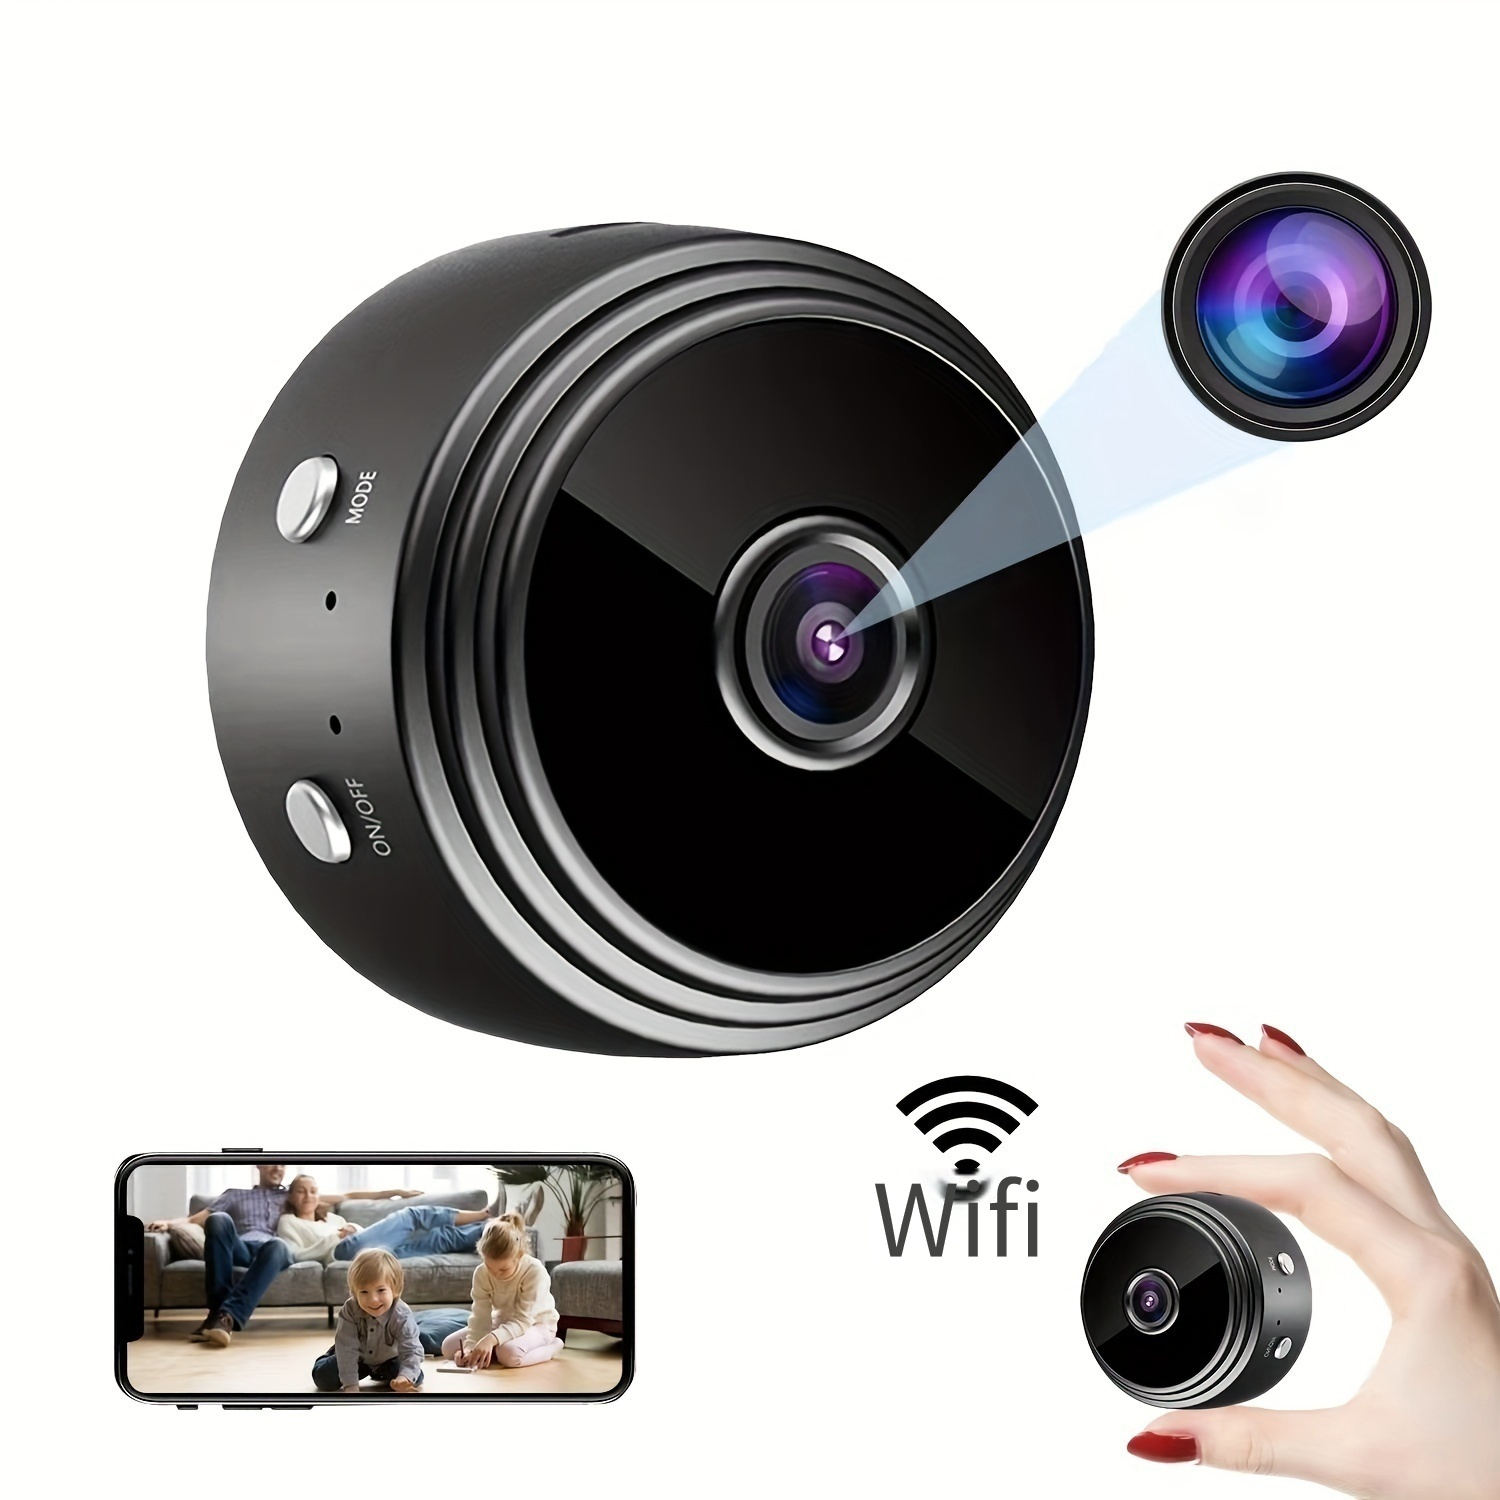 Cámara secreta Mini cámara espía WiFi cámara oculta grabadora de video  cámara pequeña para cámara de espionaje cámara de visión nocturna Cámara de